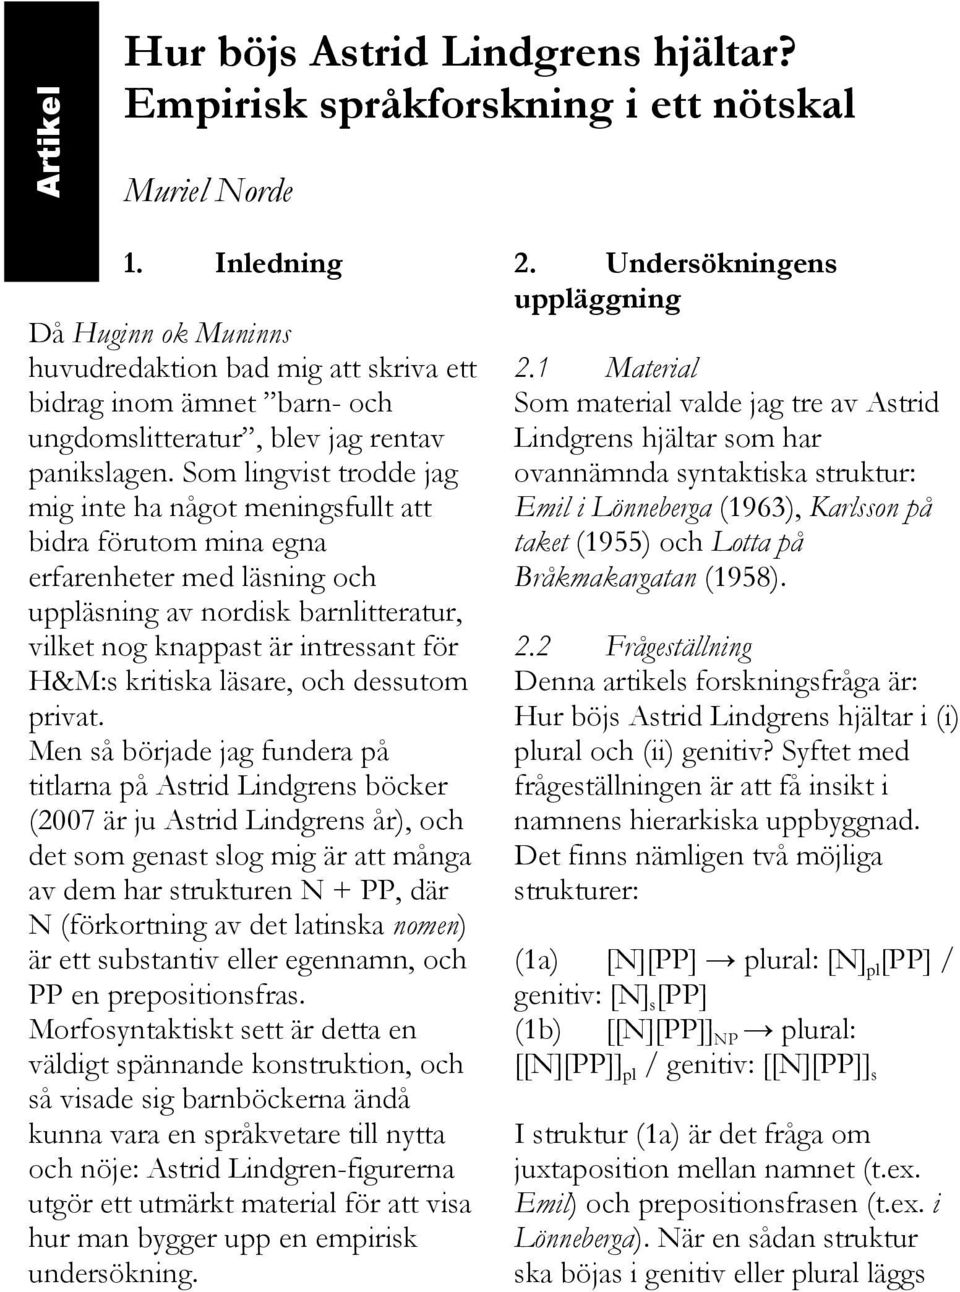 Som lingvist trodde jag mig inte ha något meningsfullt att bidra förutom mina egna erfarenheter med läsning och uppläsning av nordisk barnlitteratur, vilket nog knappast är intressant för H&M:s